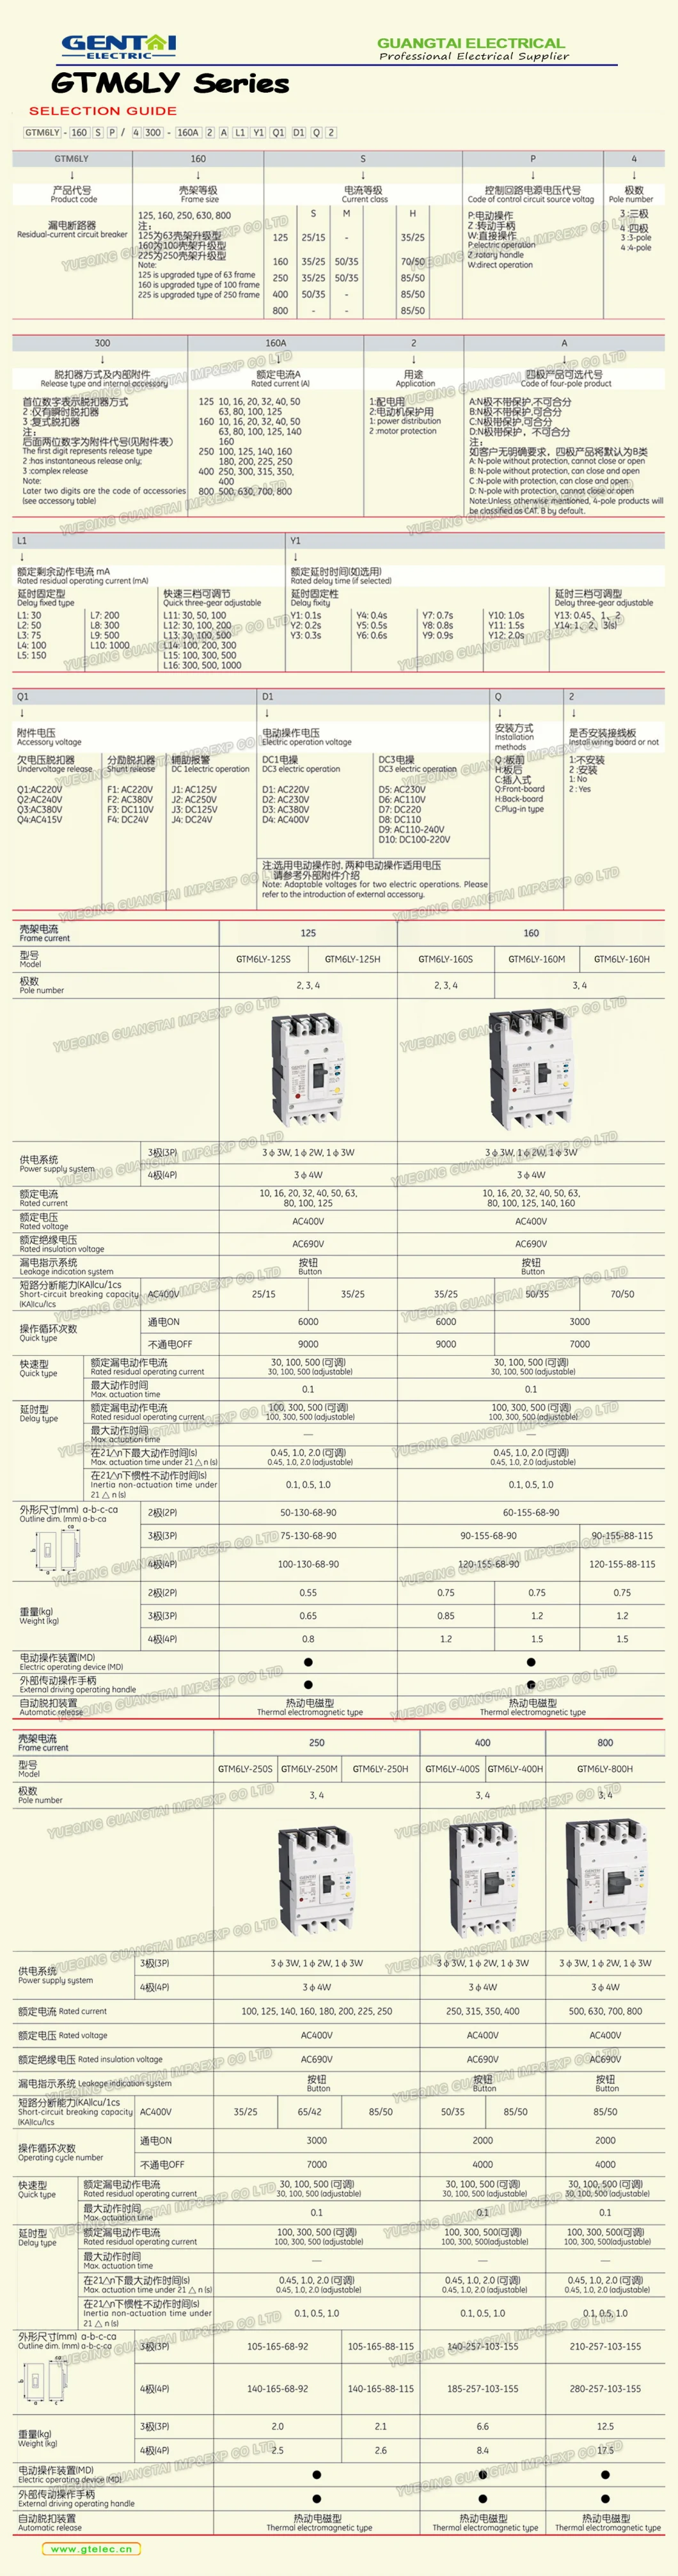 Premium Gtm6 125A 160A 250A 630A 800A MCCB Electric Moulded Case Circuit Breaker